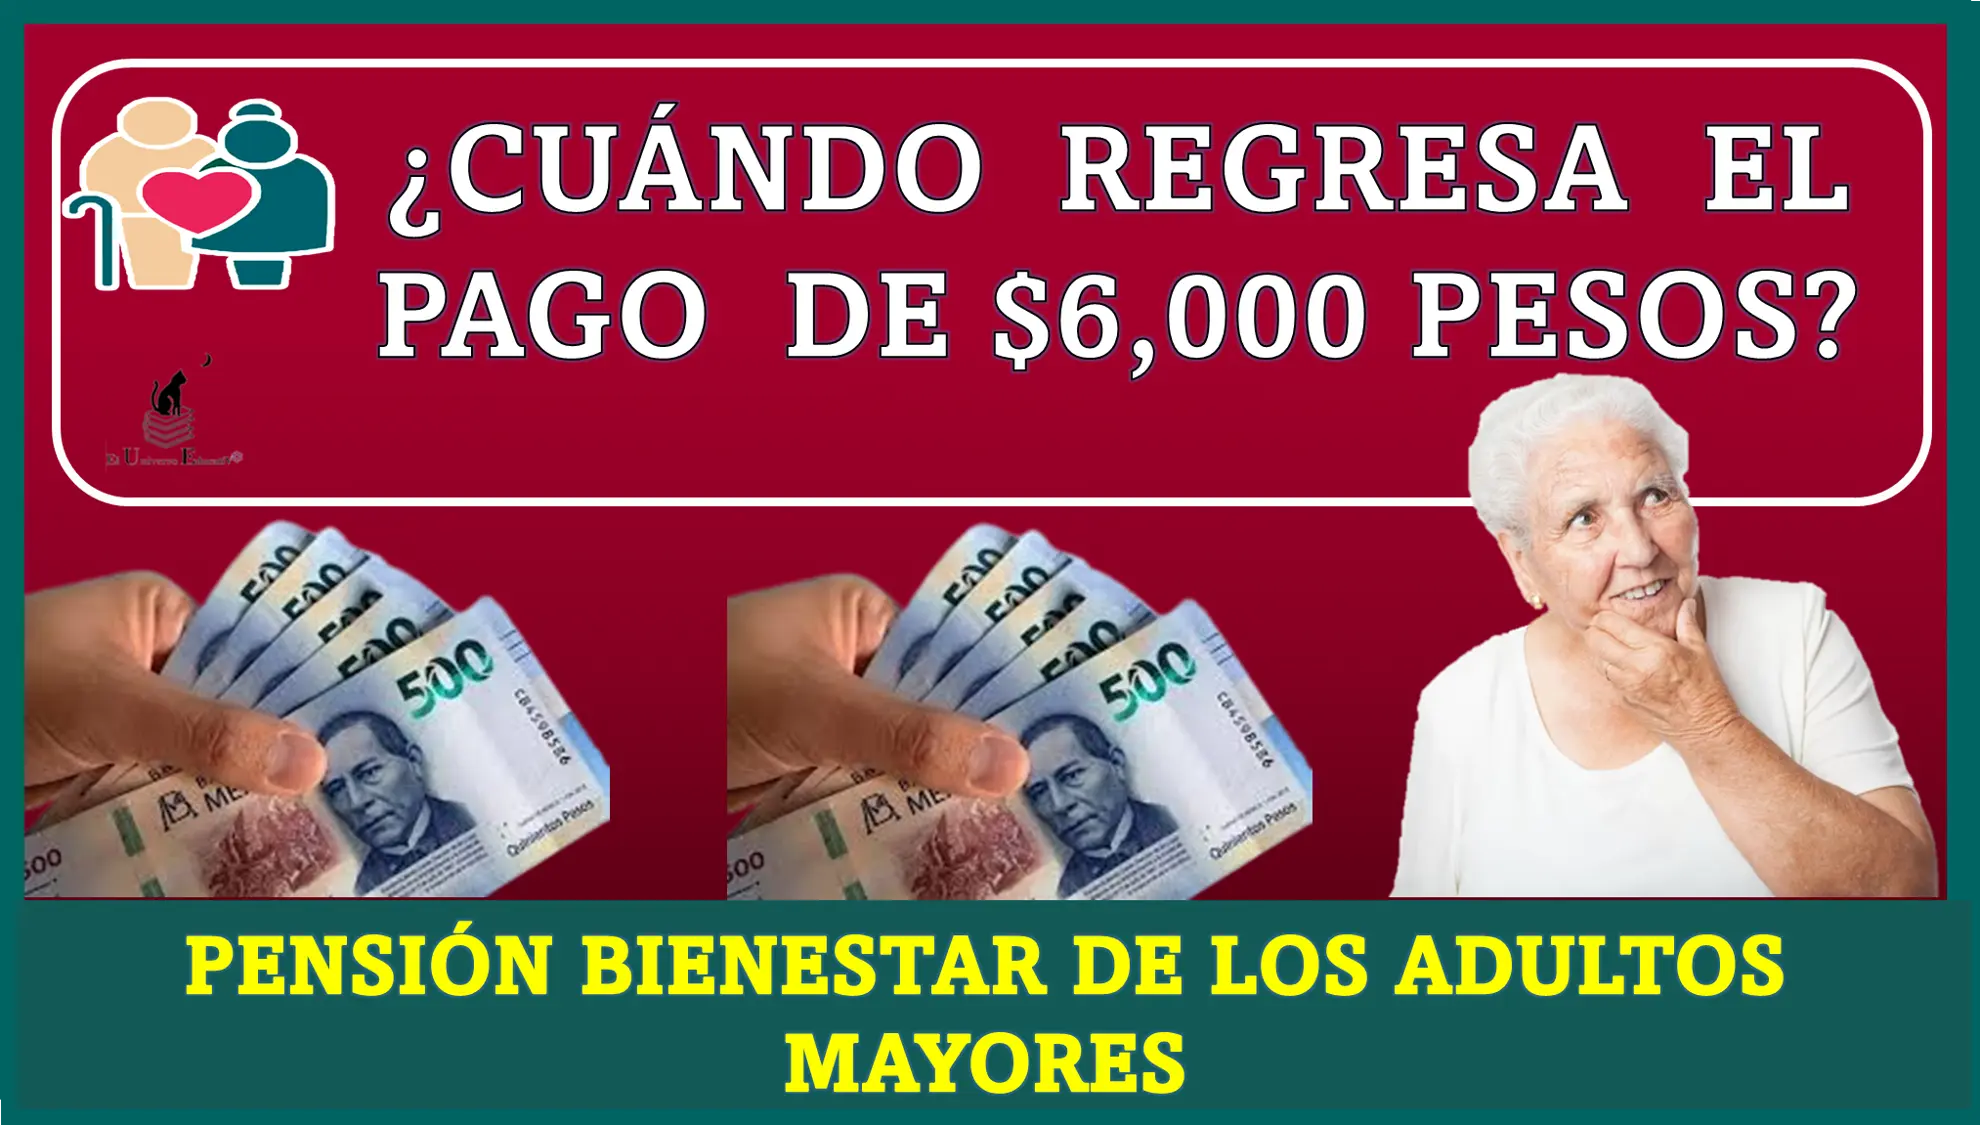 ¿CUÁNDO REGRESA EL PAGO DE $6,000 PESOS? | PENSIÓN BIENESTAR DE LOS ADULTOS MAYORES